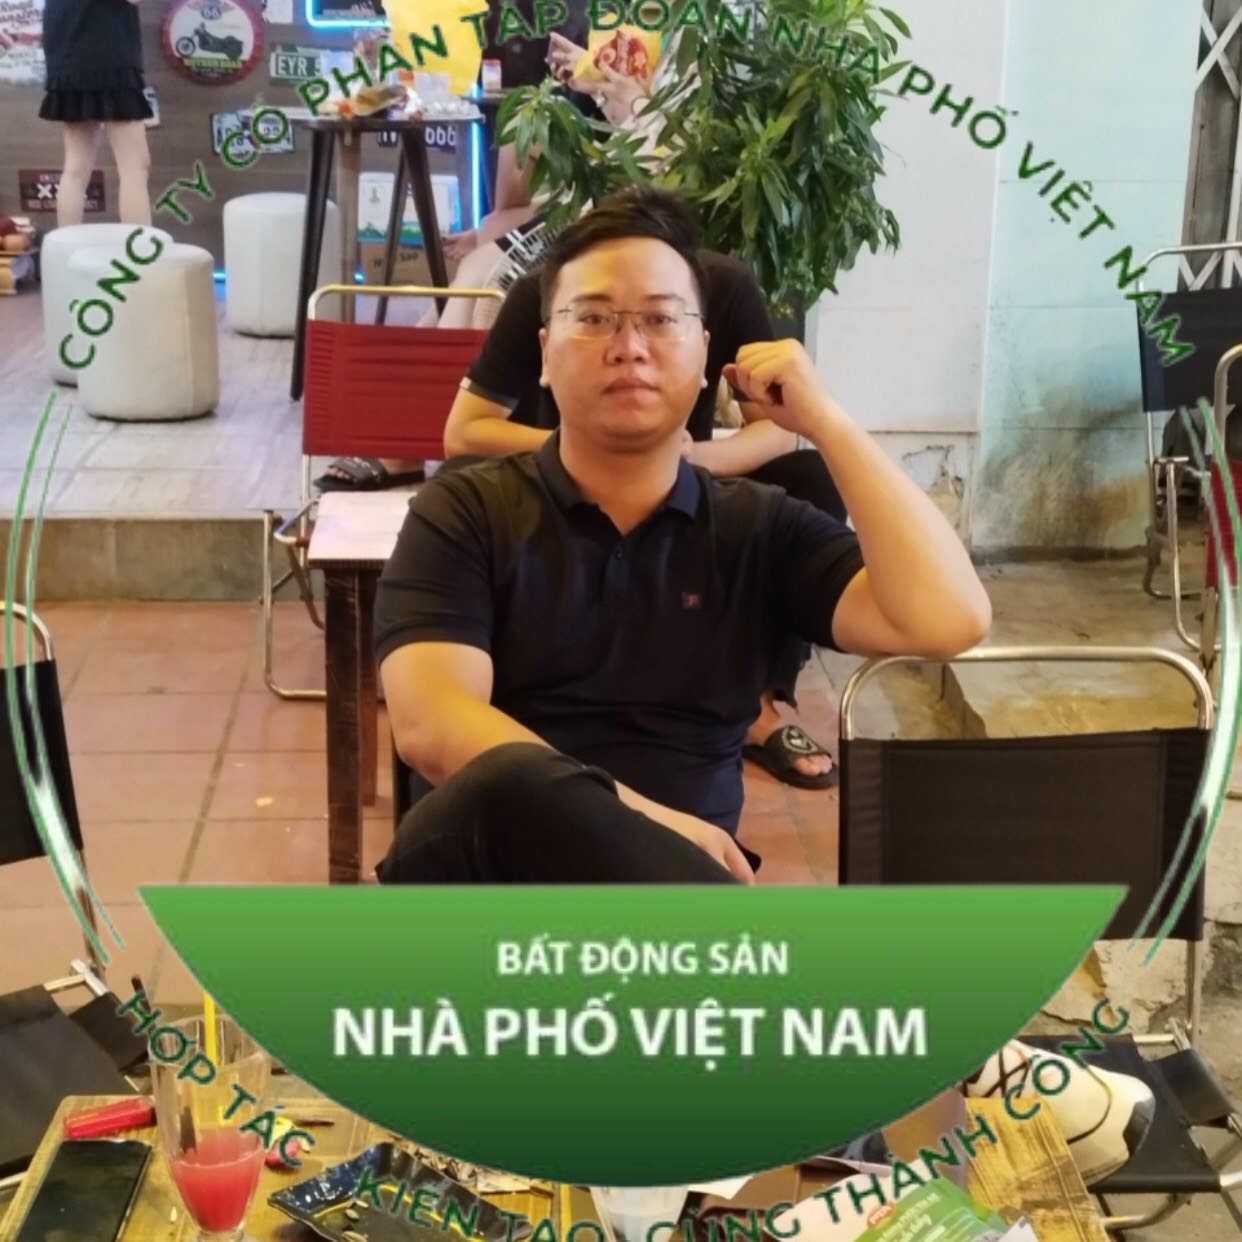 Anh Nguyễn Anh Tuấn sinh năm 1992 nhà phố 682 thuộc khối Liên minh